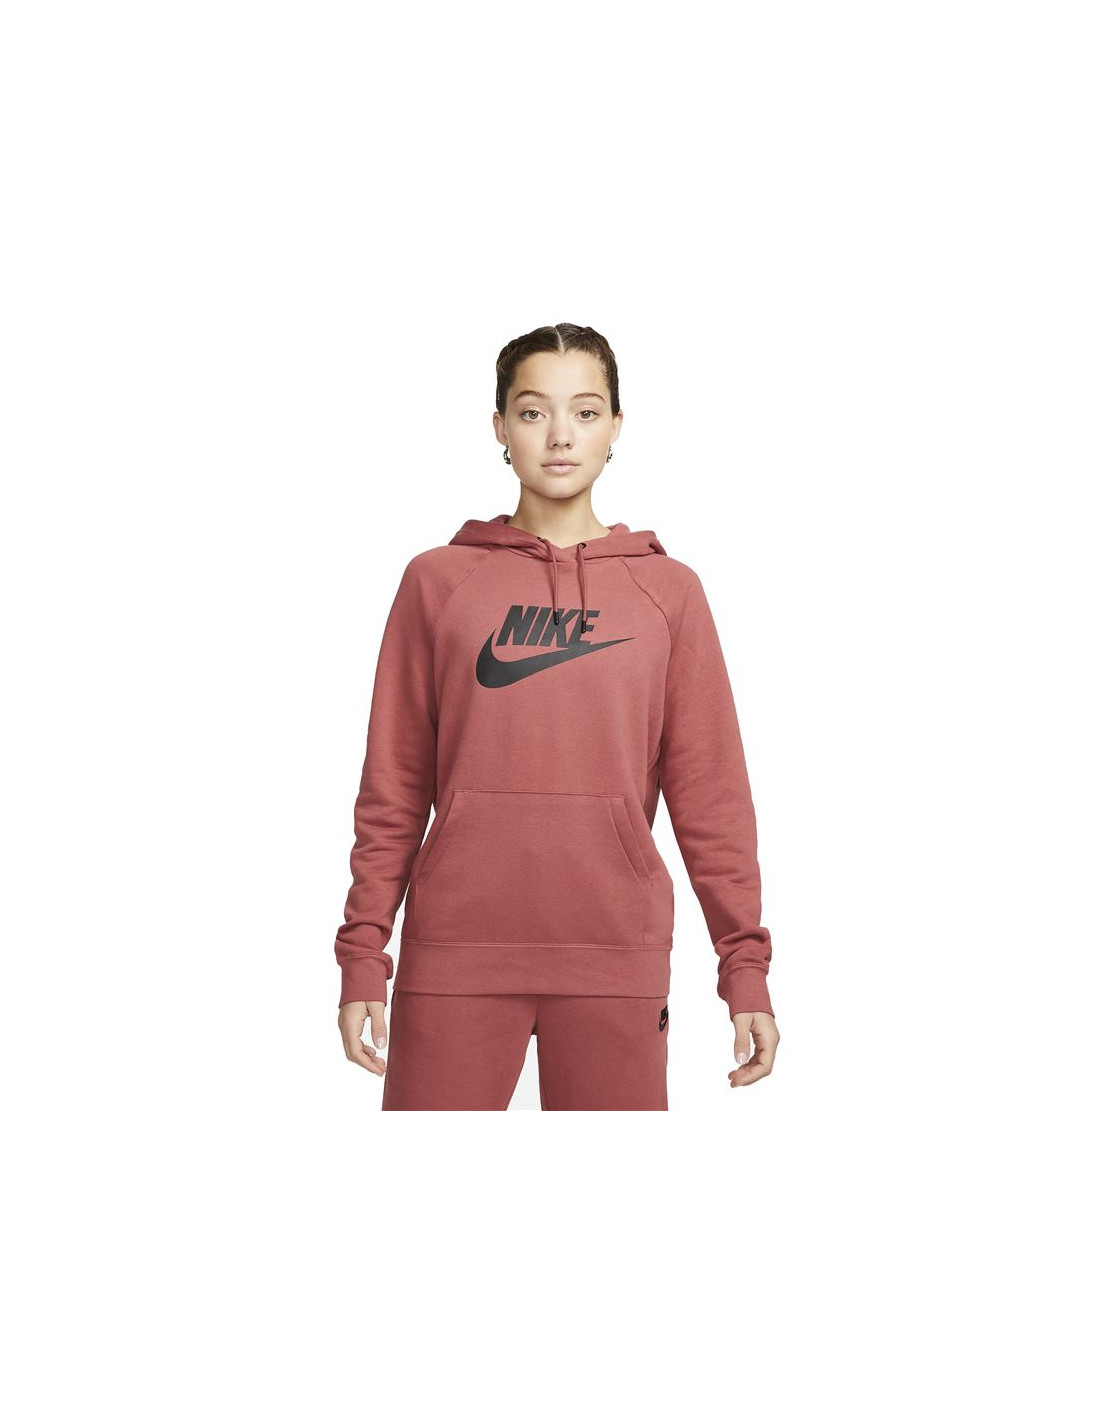 Nuevo Nike Mujer Compra Online a Precios Baratos